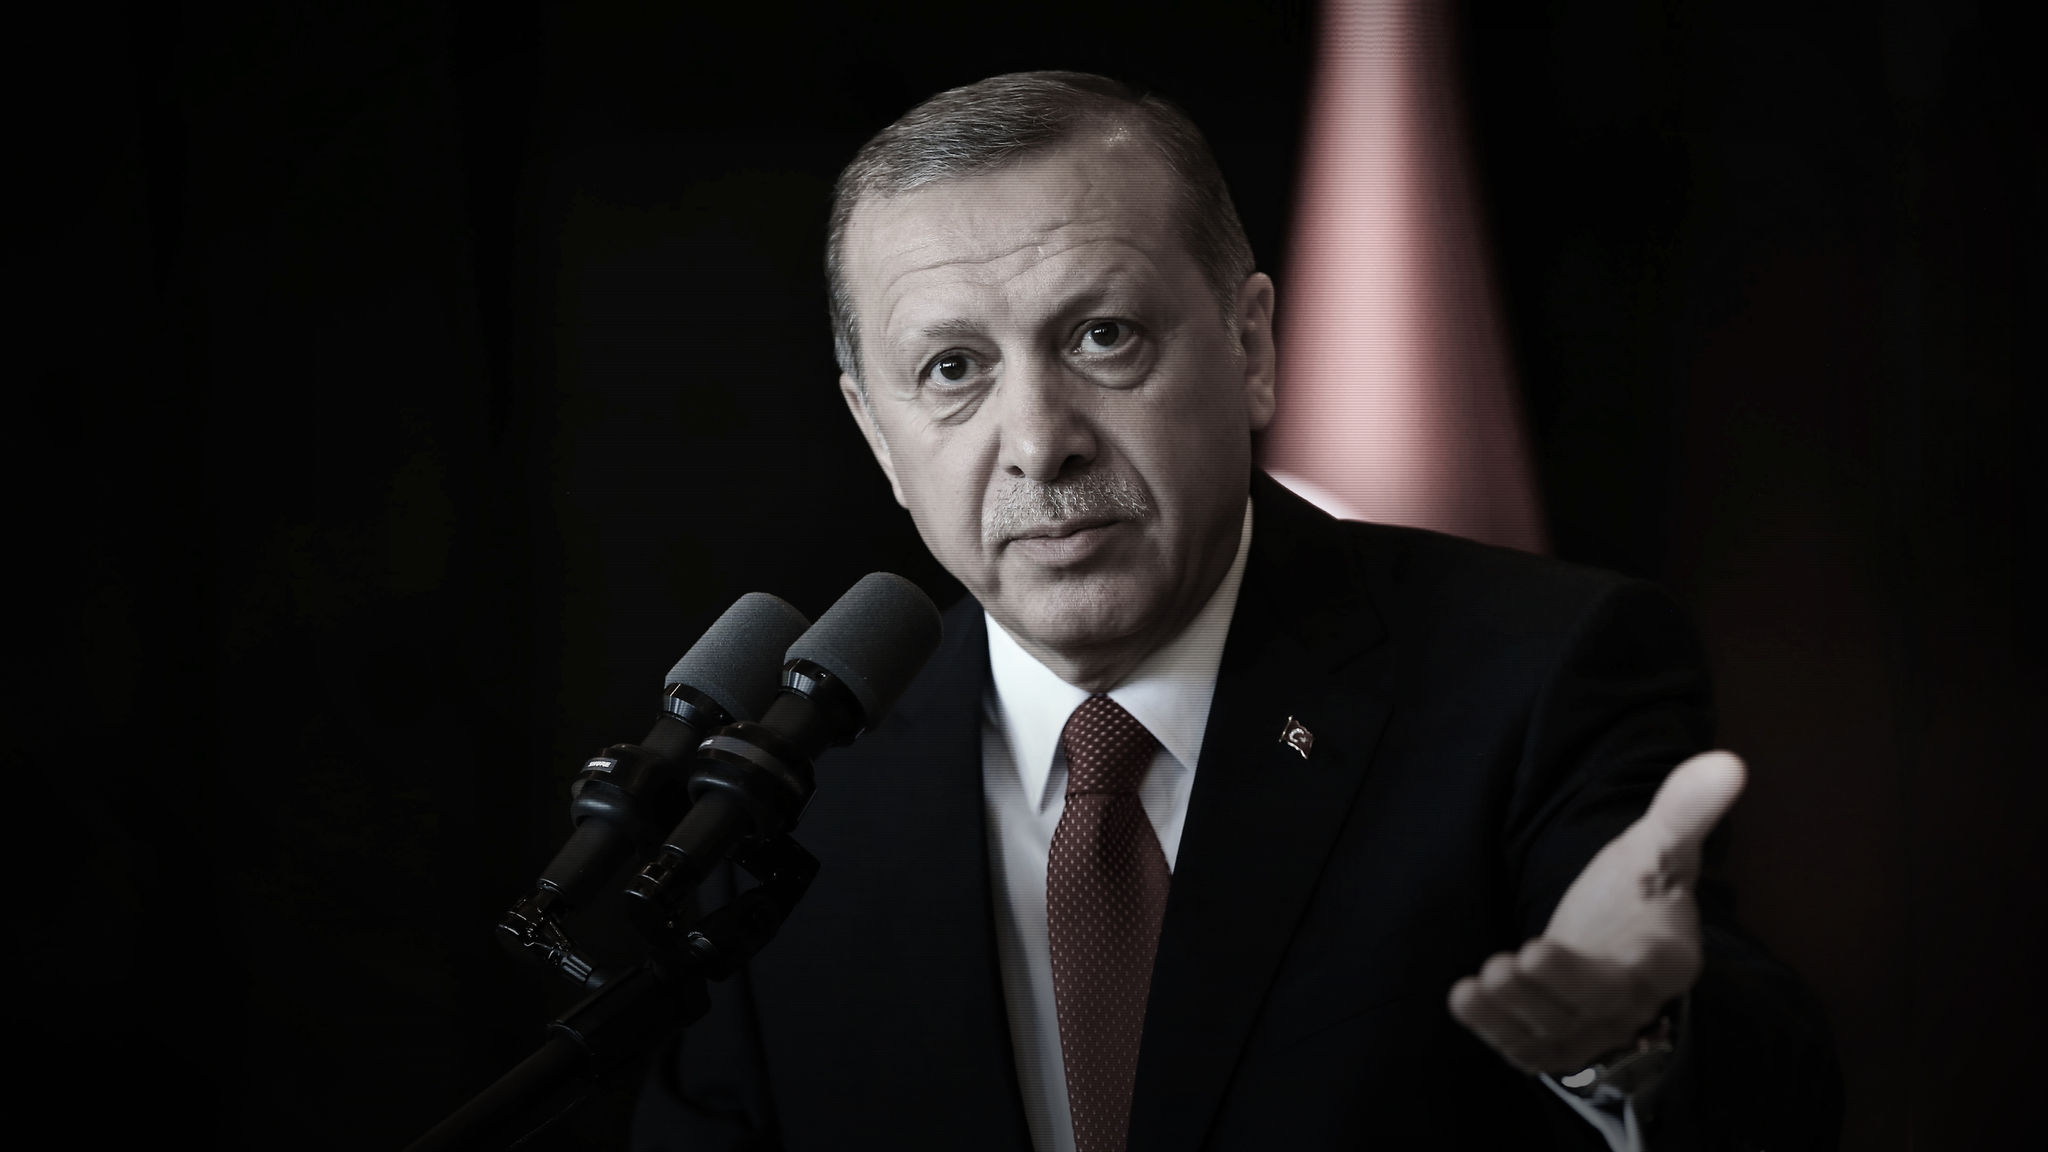 Recep Tayyip Erdoğan - Erdoğan Savaşa Hazırız , HD Wallpaper & Backgrounds